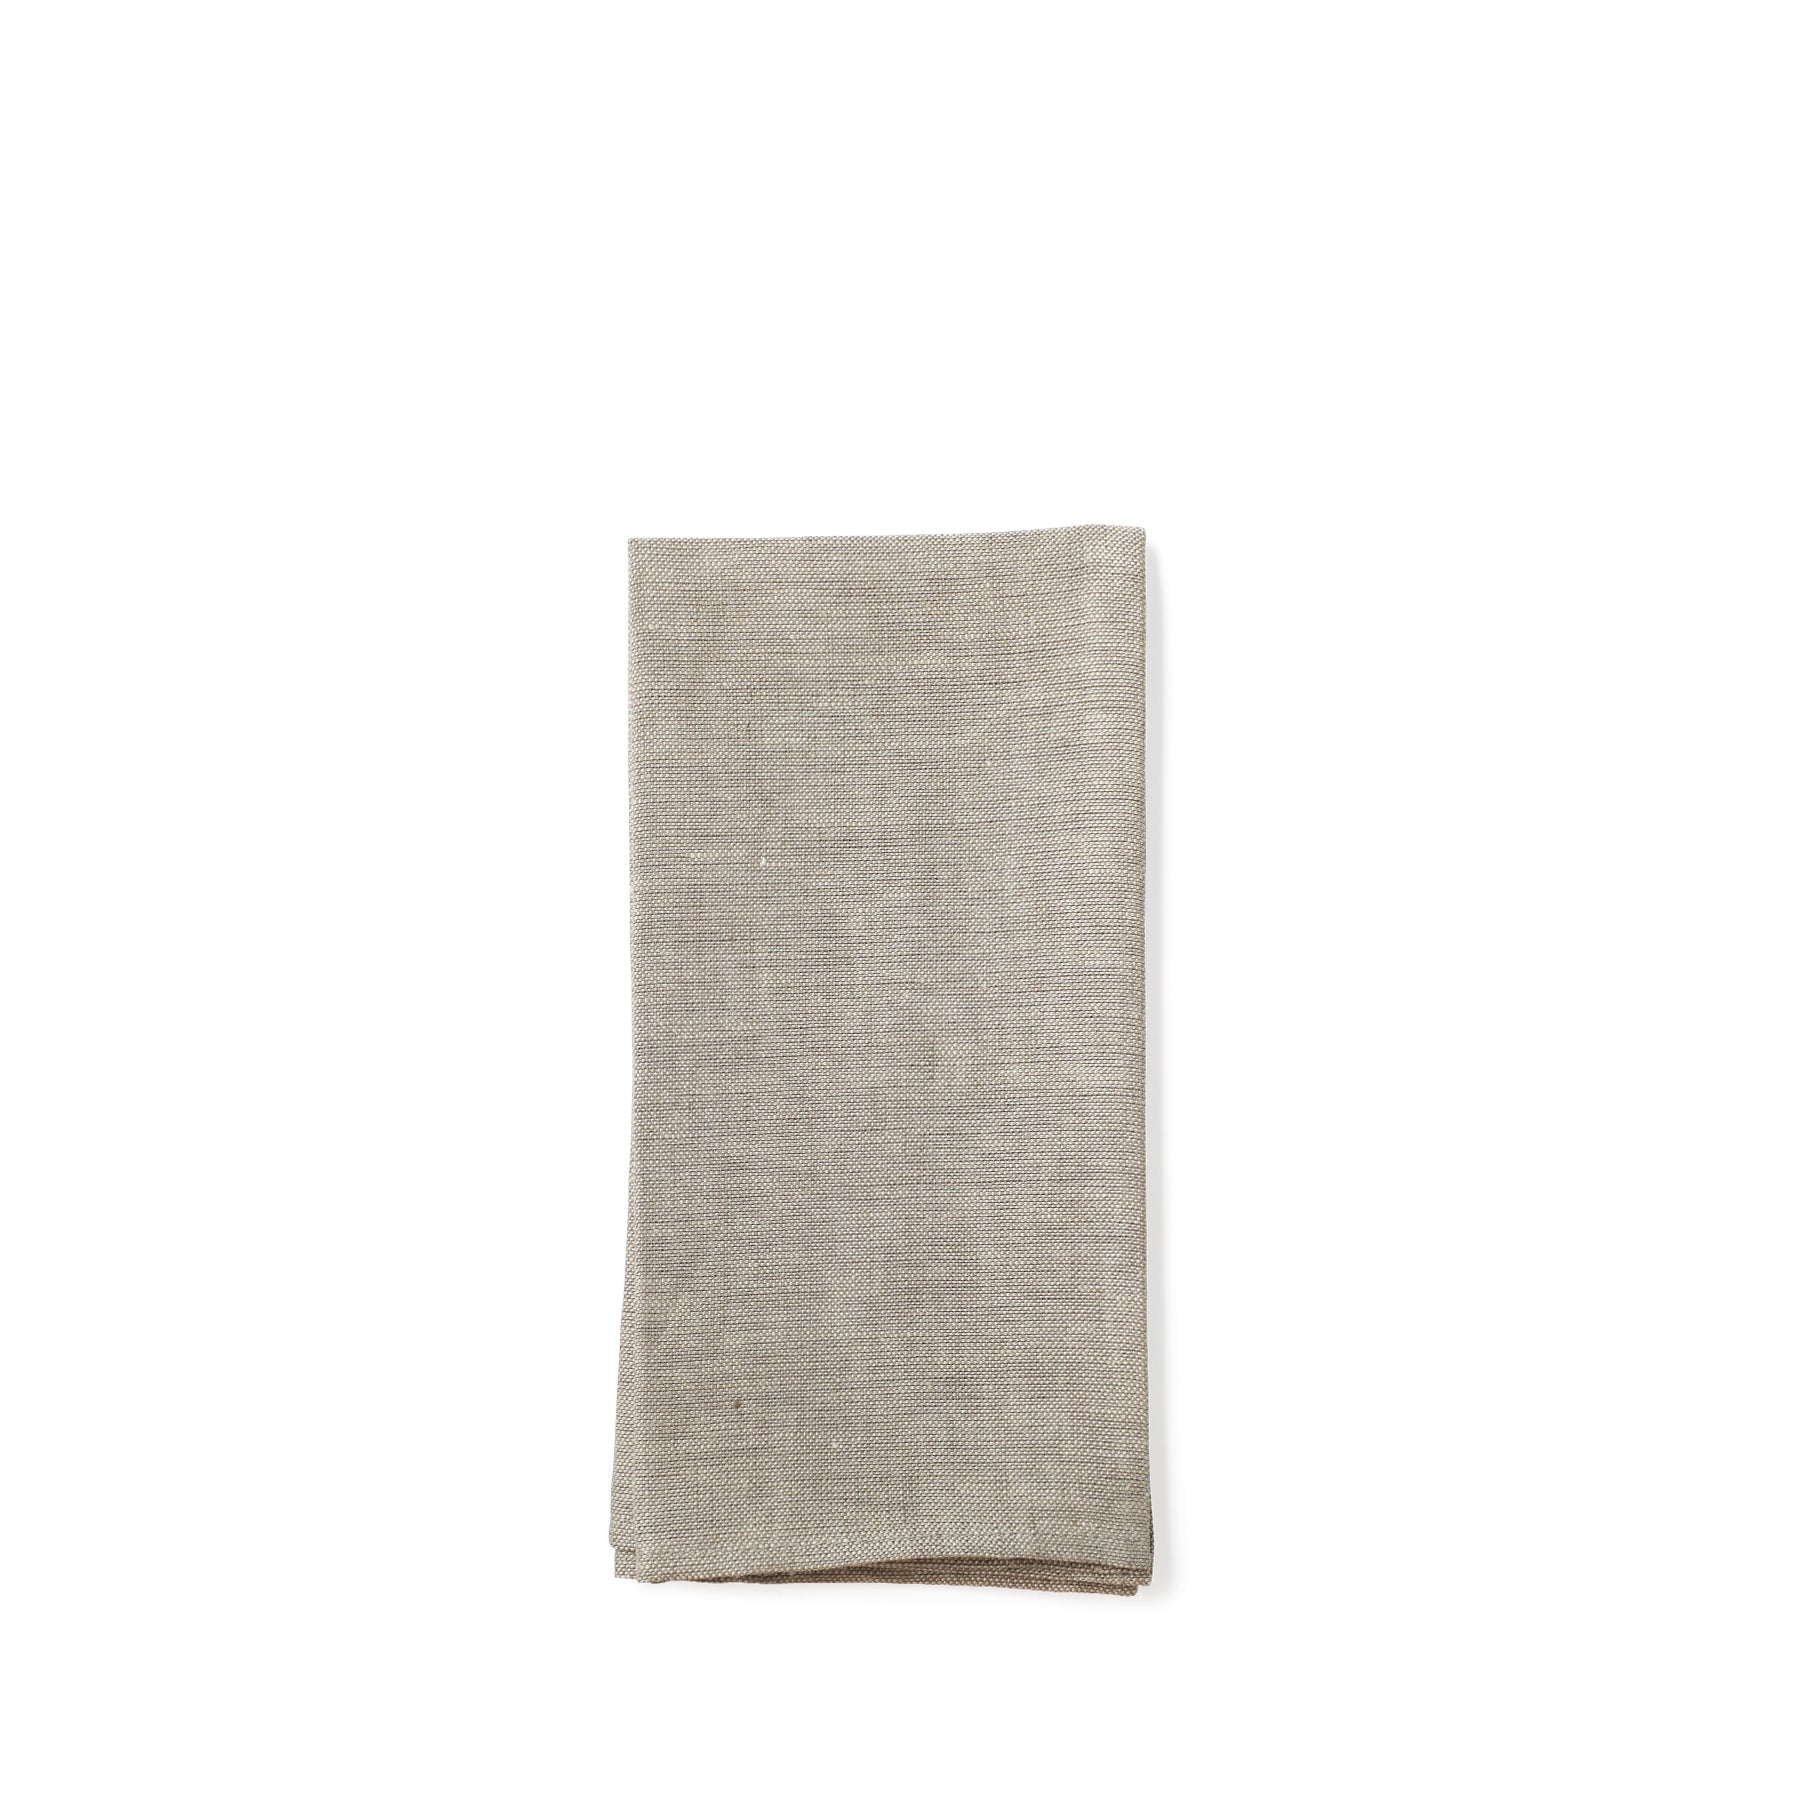 Linen Hopsack Napkins in Natural Gray (Set of 2) Zoom Image 1